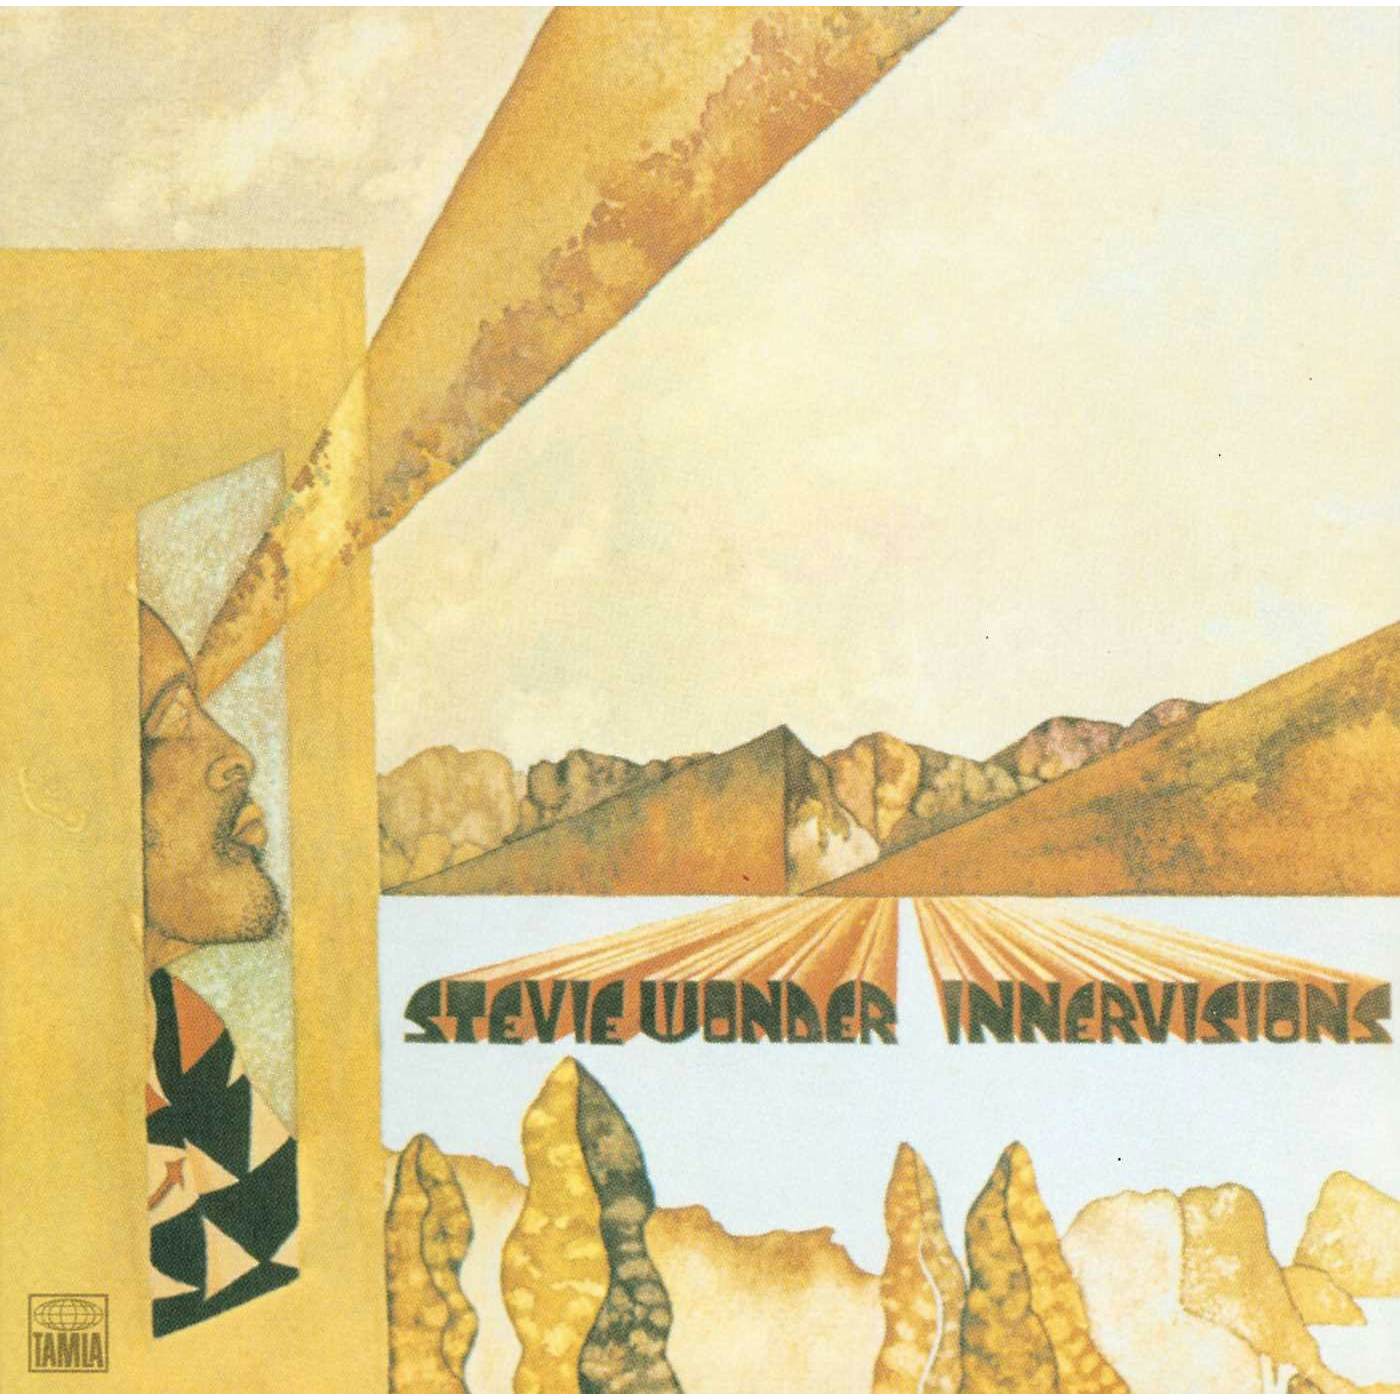 Stevie Wonder - Innervision